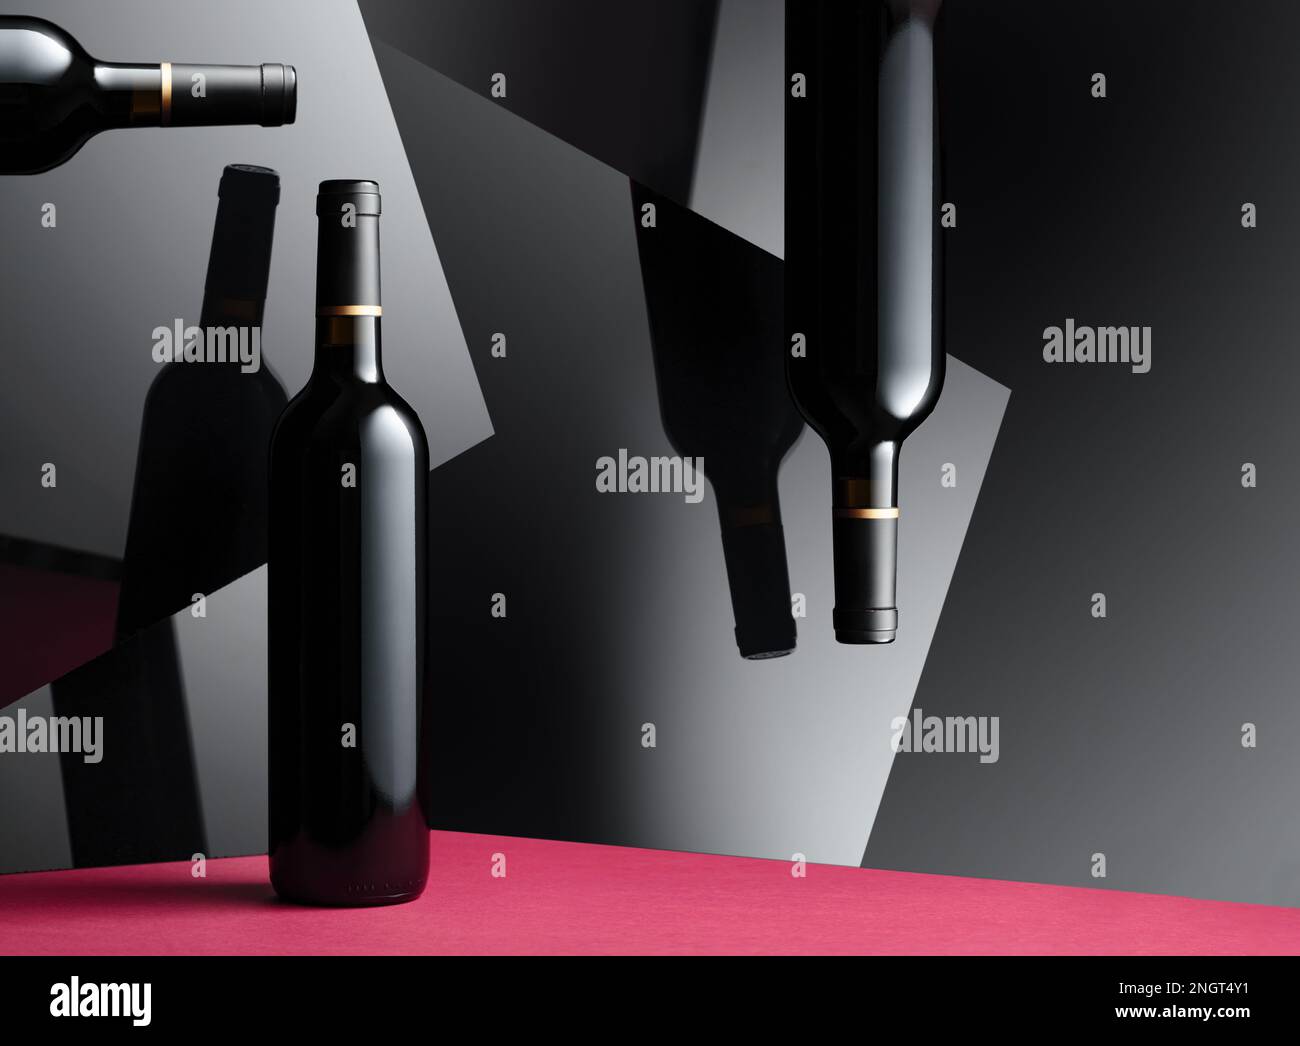 Bouteilles de vin rouge avec un reflet sur les surfaces noires brillantes. Concept du thème du vin cher. Banque D'Images